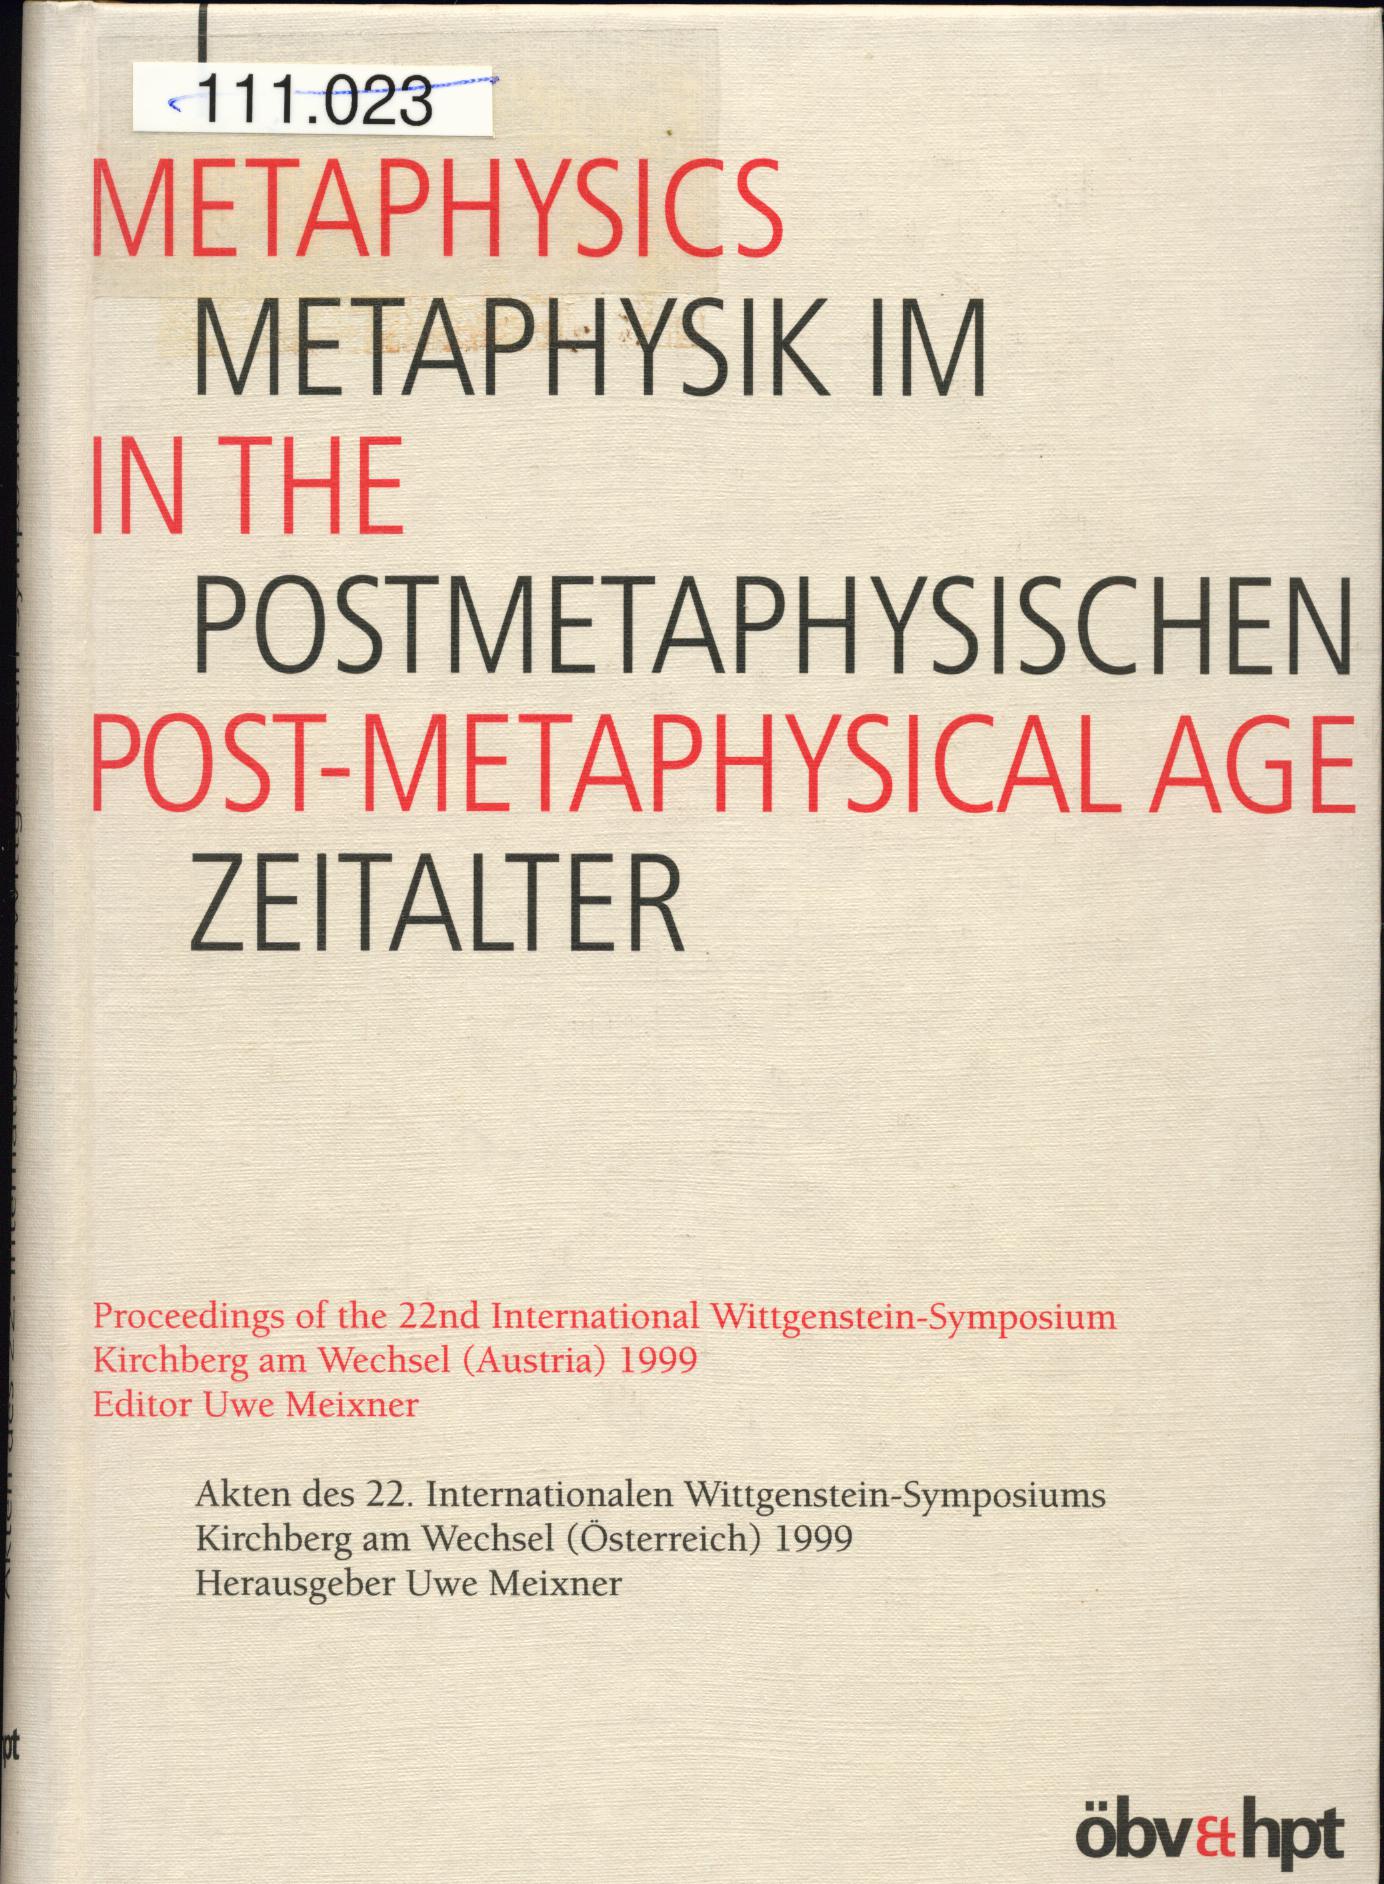 Metaphysik im postmetaphysischen Zeitalter /Metaphysics in the Post-Metaphysical Age: Akten des 22. Internationalen Wittgenstein-Symposiums 1999 (Schriftenreihe der Wittgenstein-Gesellschaft)